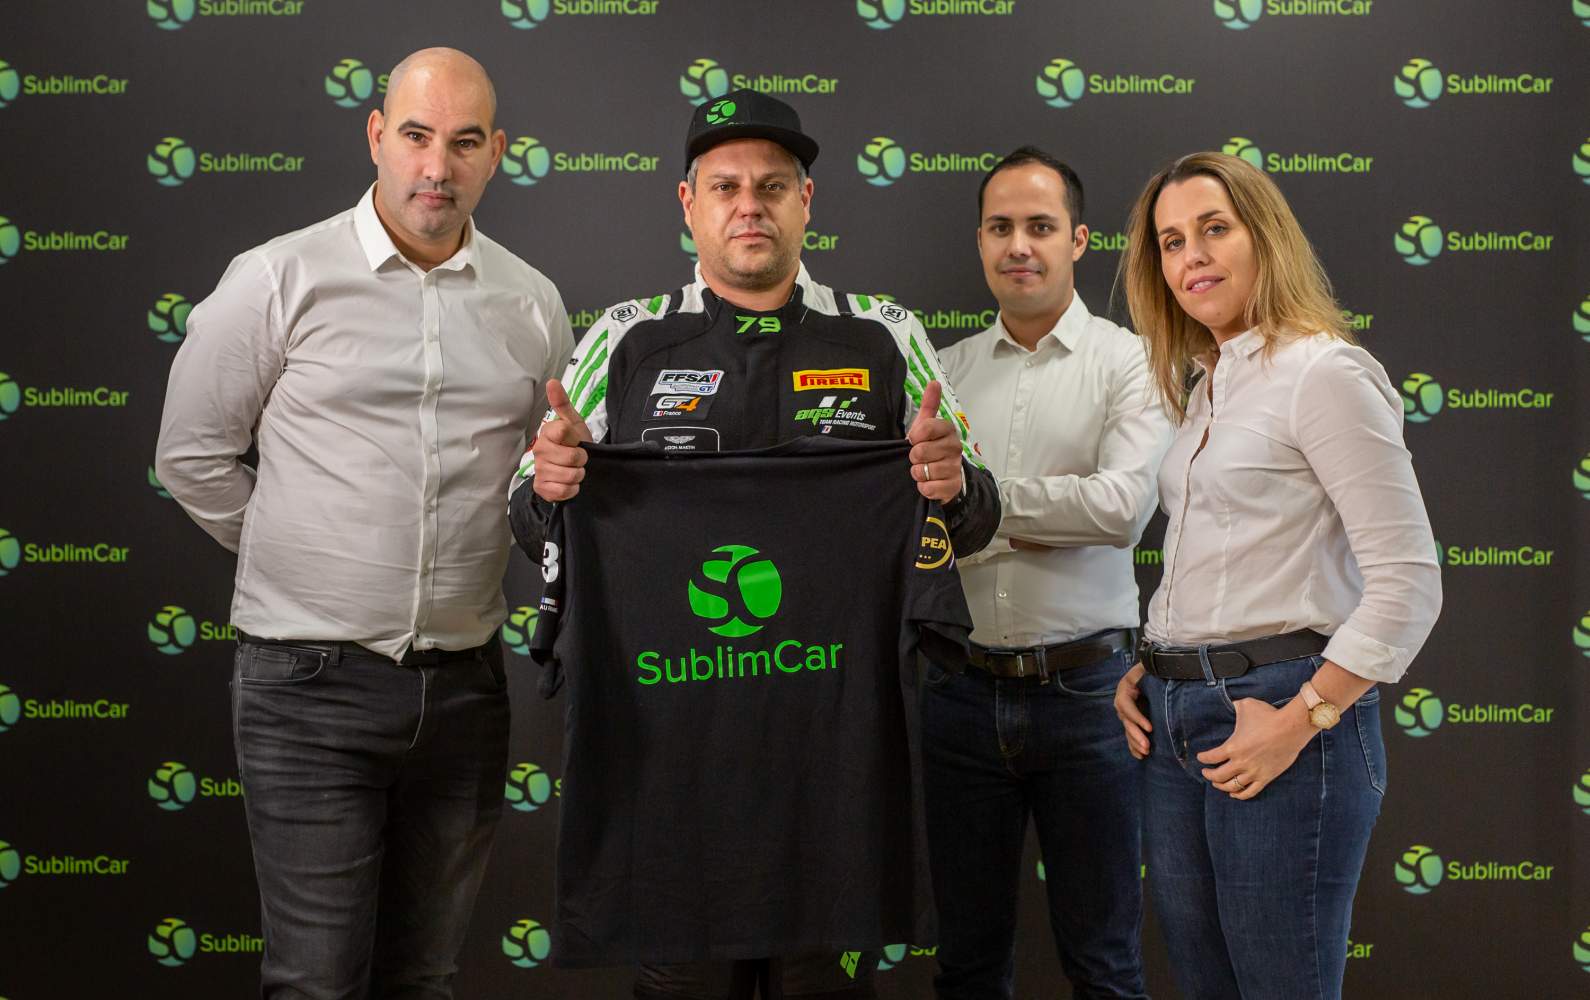 SublimCar, fier de soutenir le pilote de course Lauris Nauroy